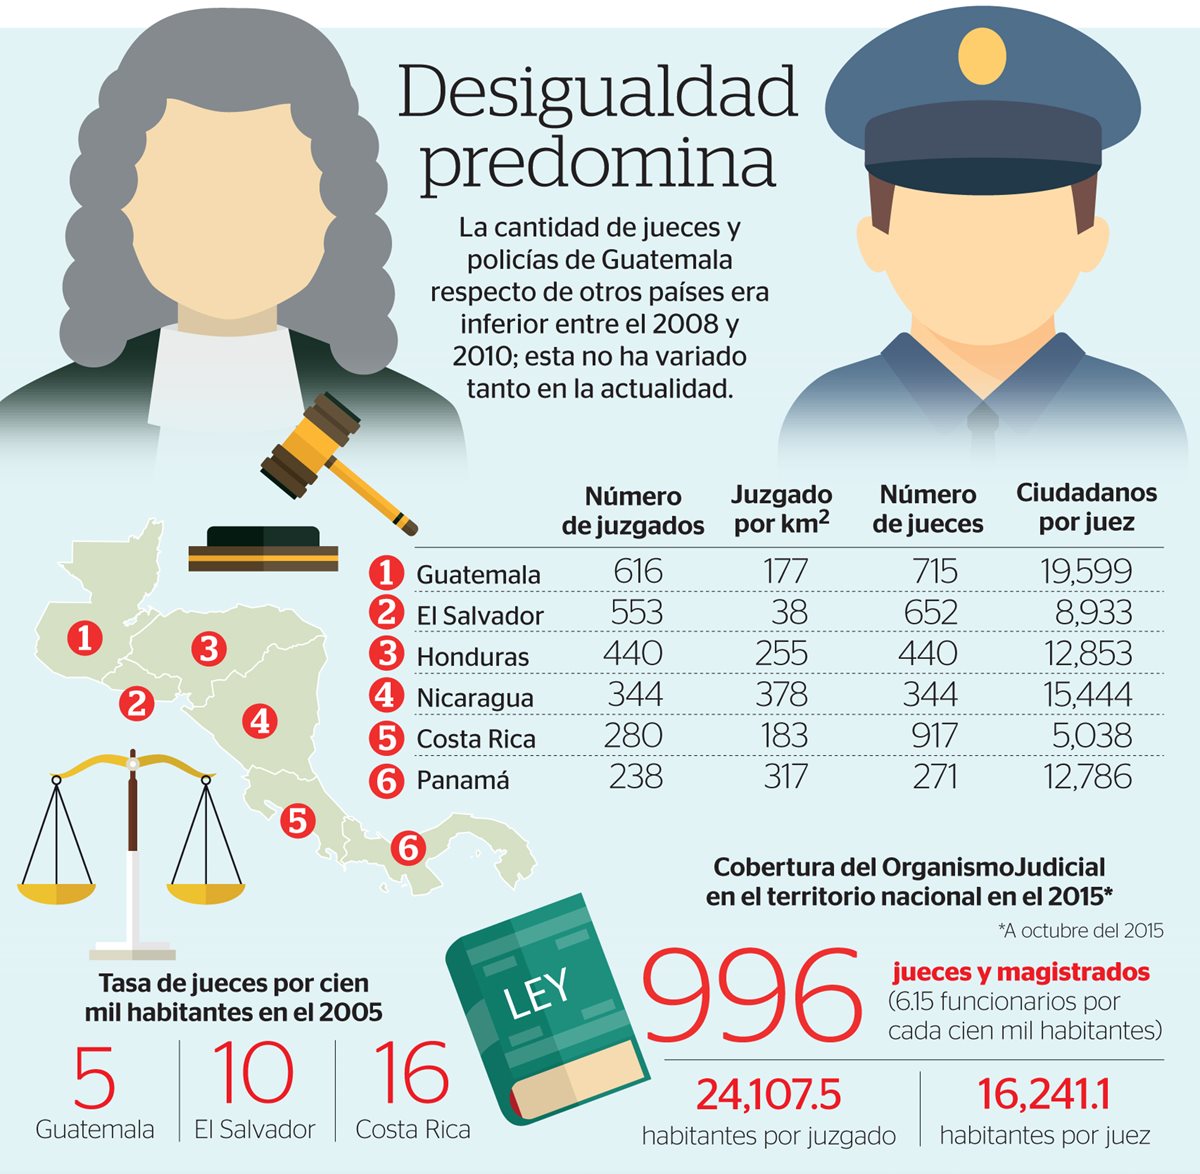 (Prensa Libre Infografía: Esteban Arreola)